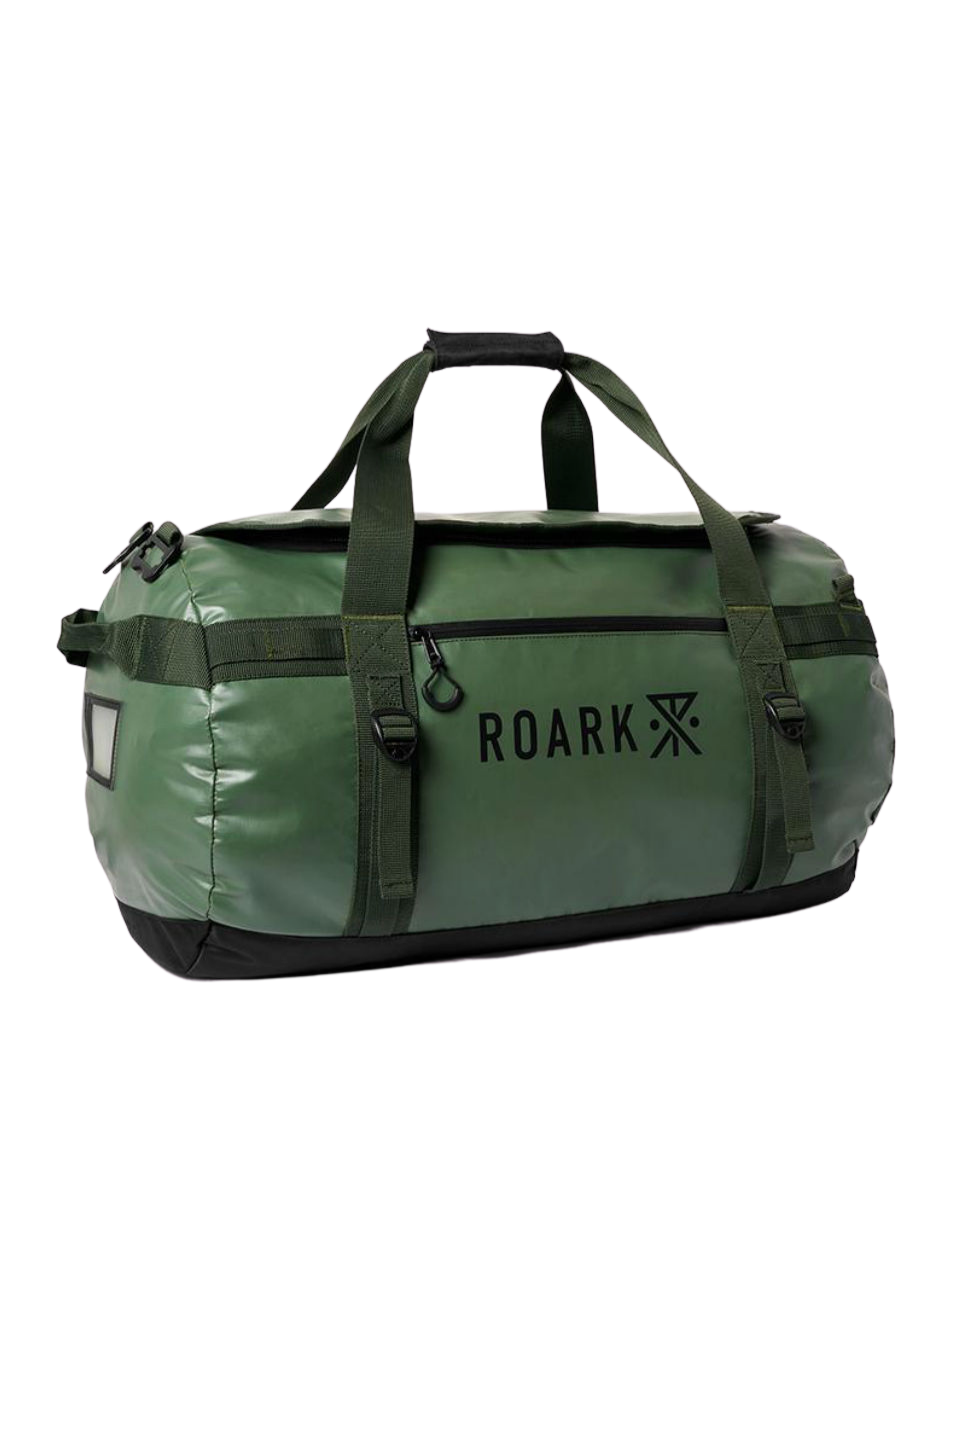 Roark - Keg 80L Duffel - Military - Side